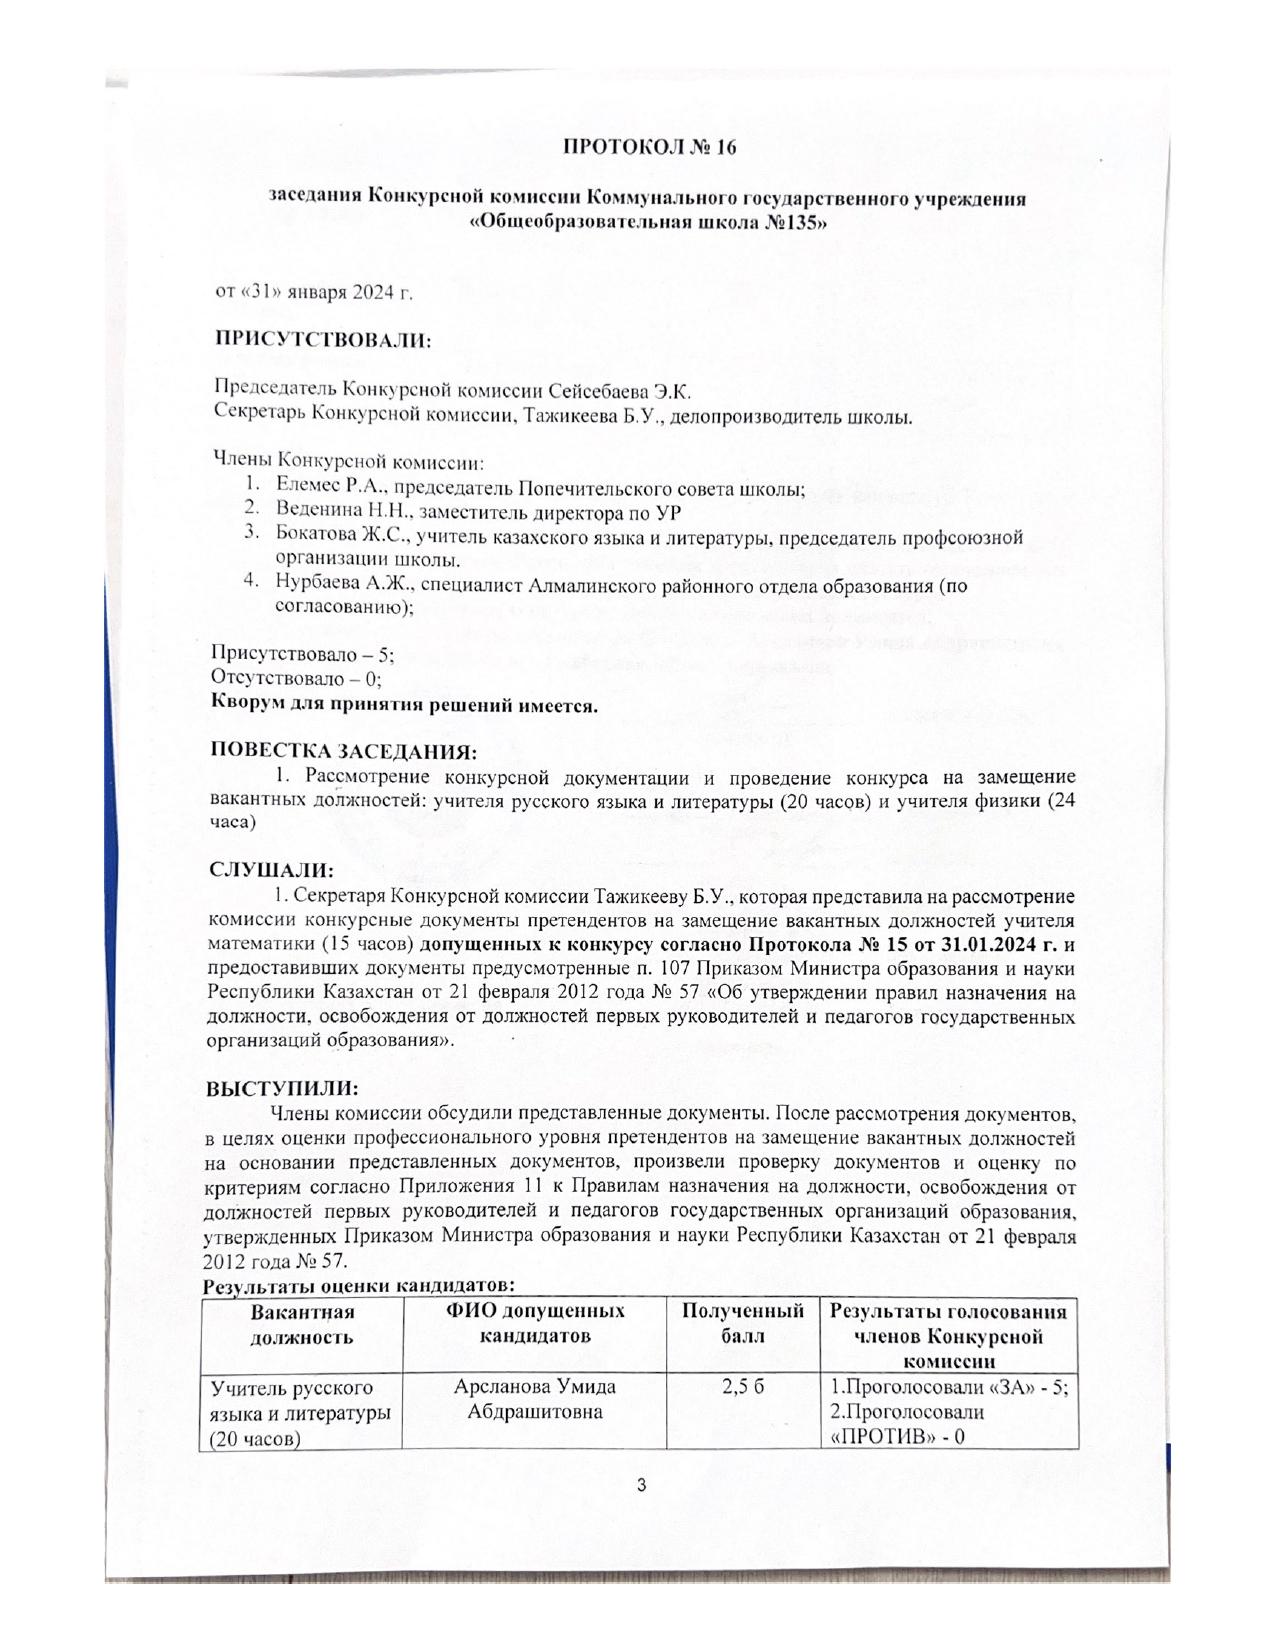 Протокол №16 заседания Конкурсной комиссии Коммунального государственного учреждения "Общеобразовательная школа №135"